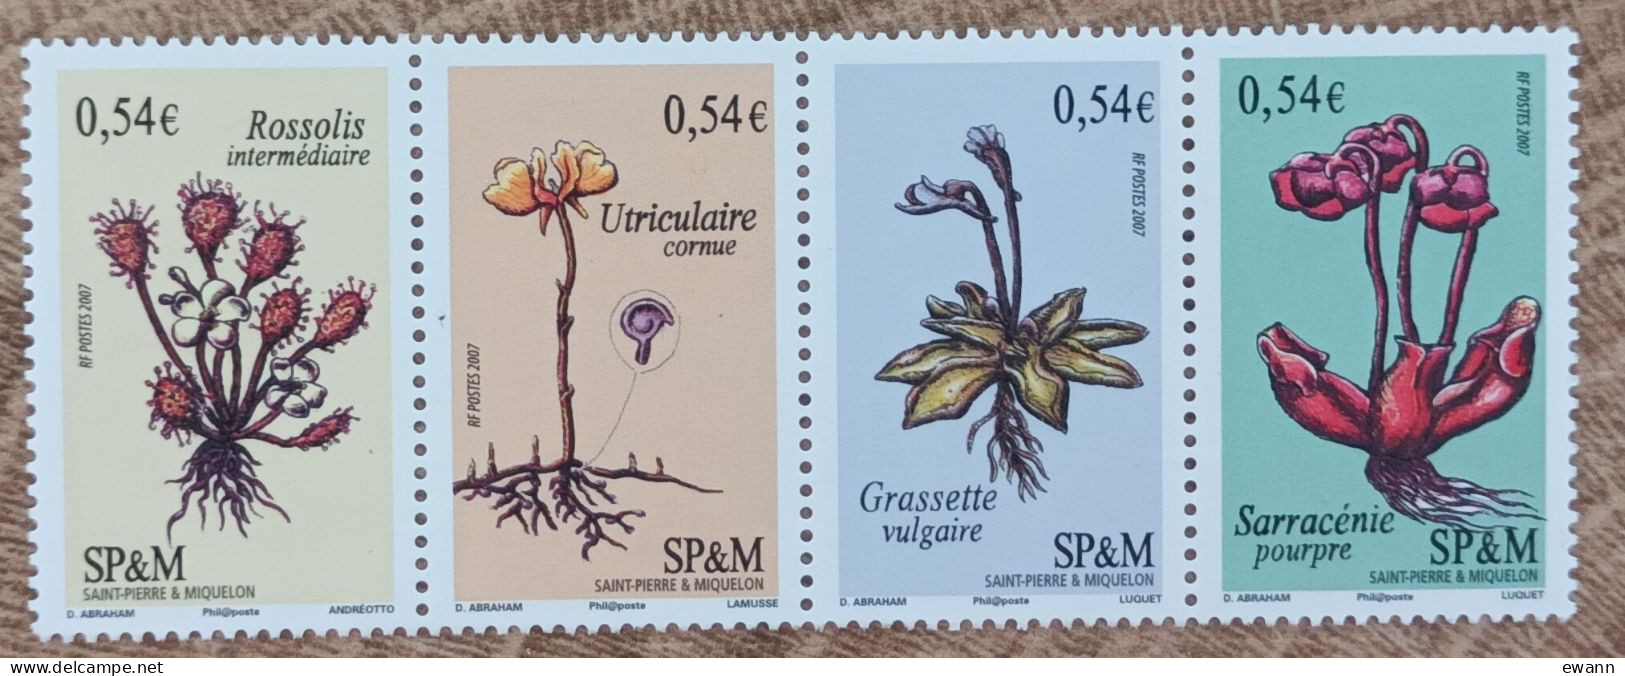 Saint Pierre Et Miquelon - YT N°900 à 903 - Flore / Plantes Vasculaires Carnivores - 2007 - Neuf - Neufs